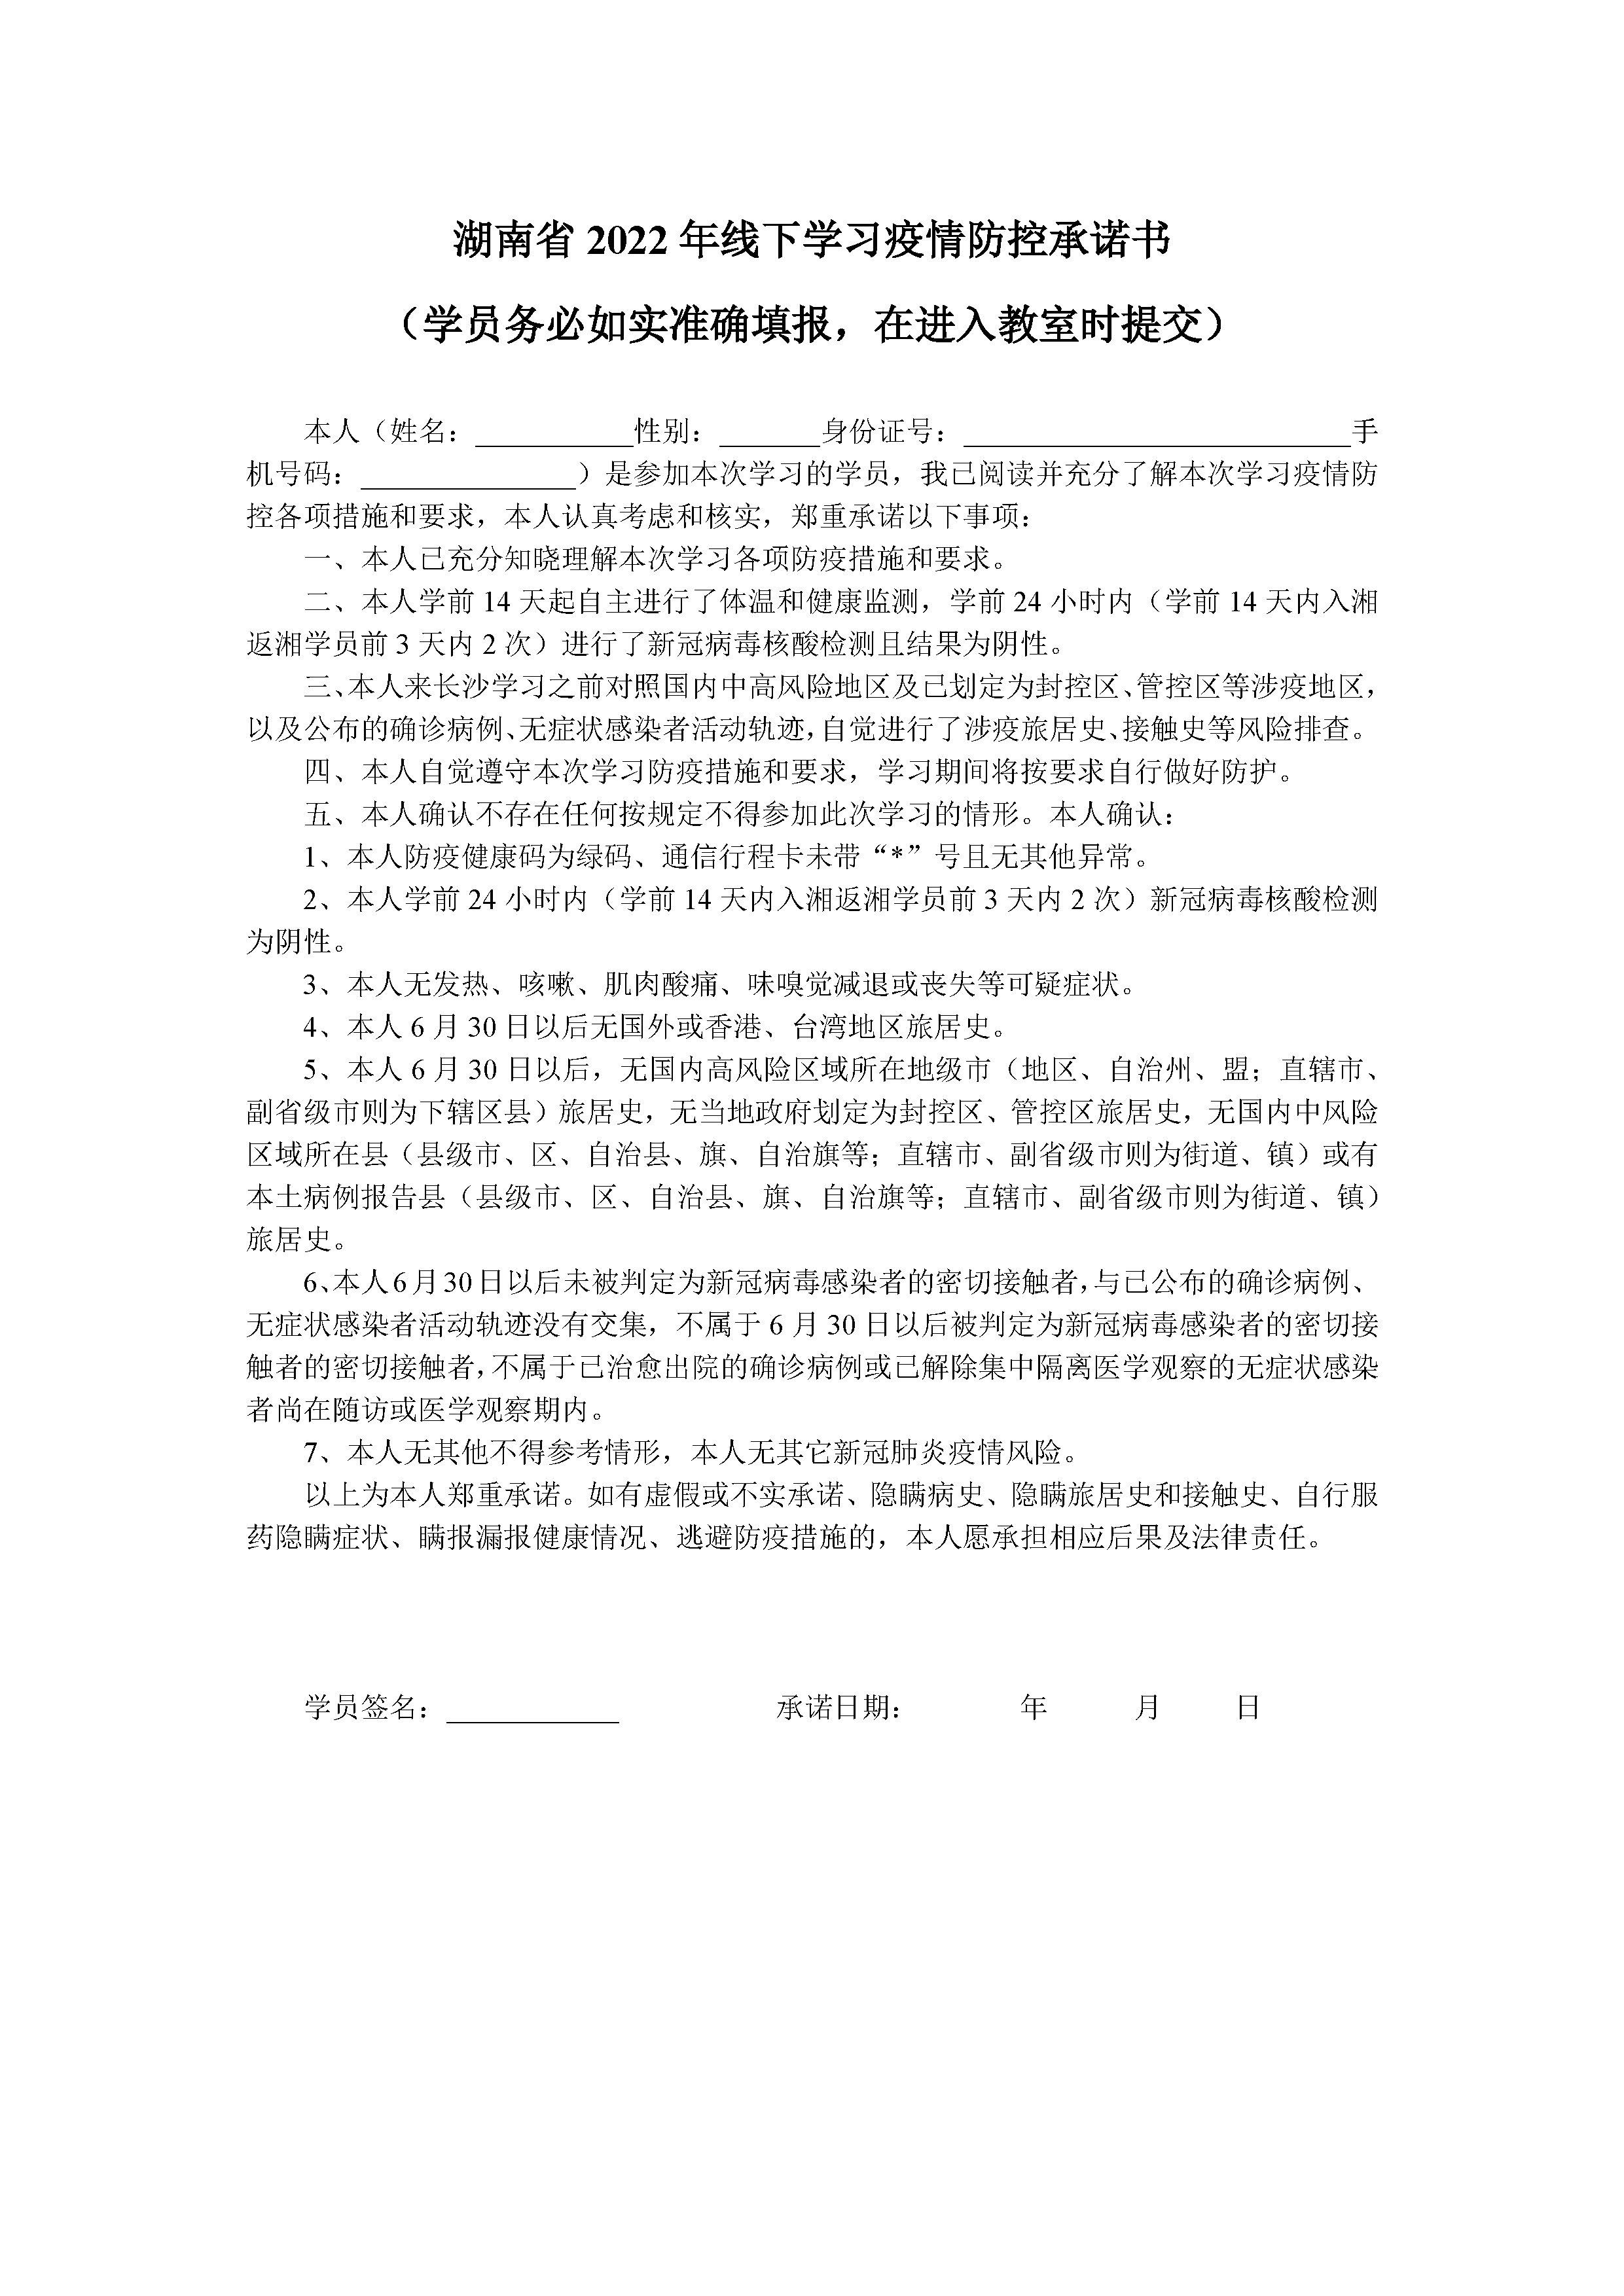 湖南省2022年专业技术人员职业资格考试考生疫情防控承诺书.jpg